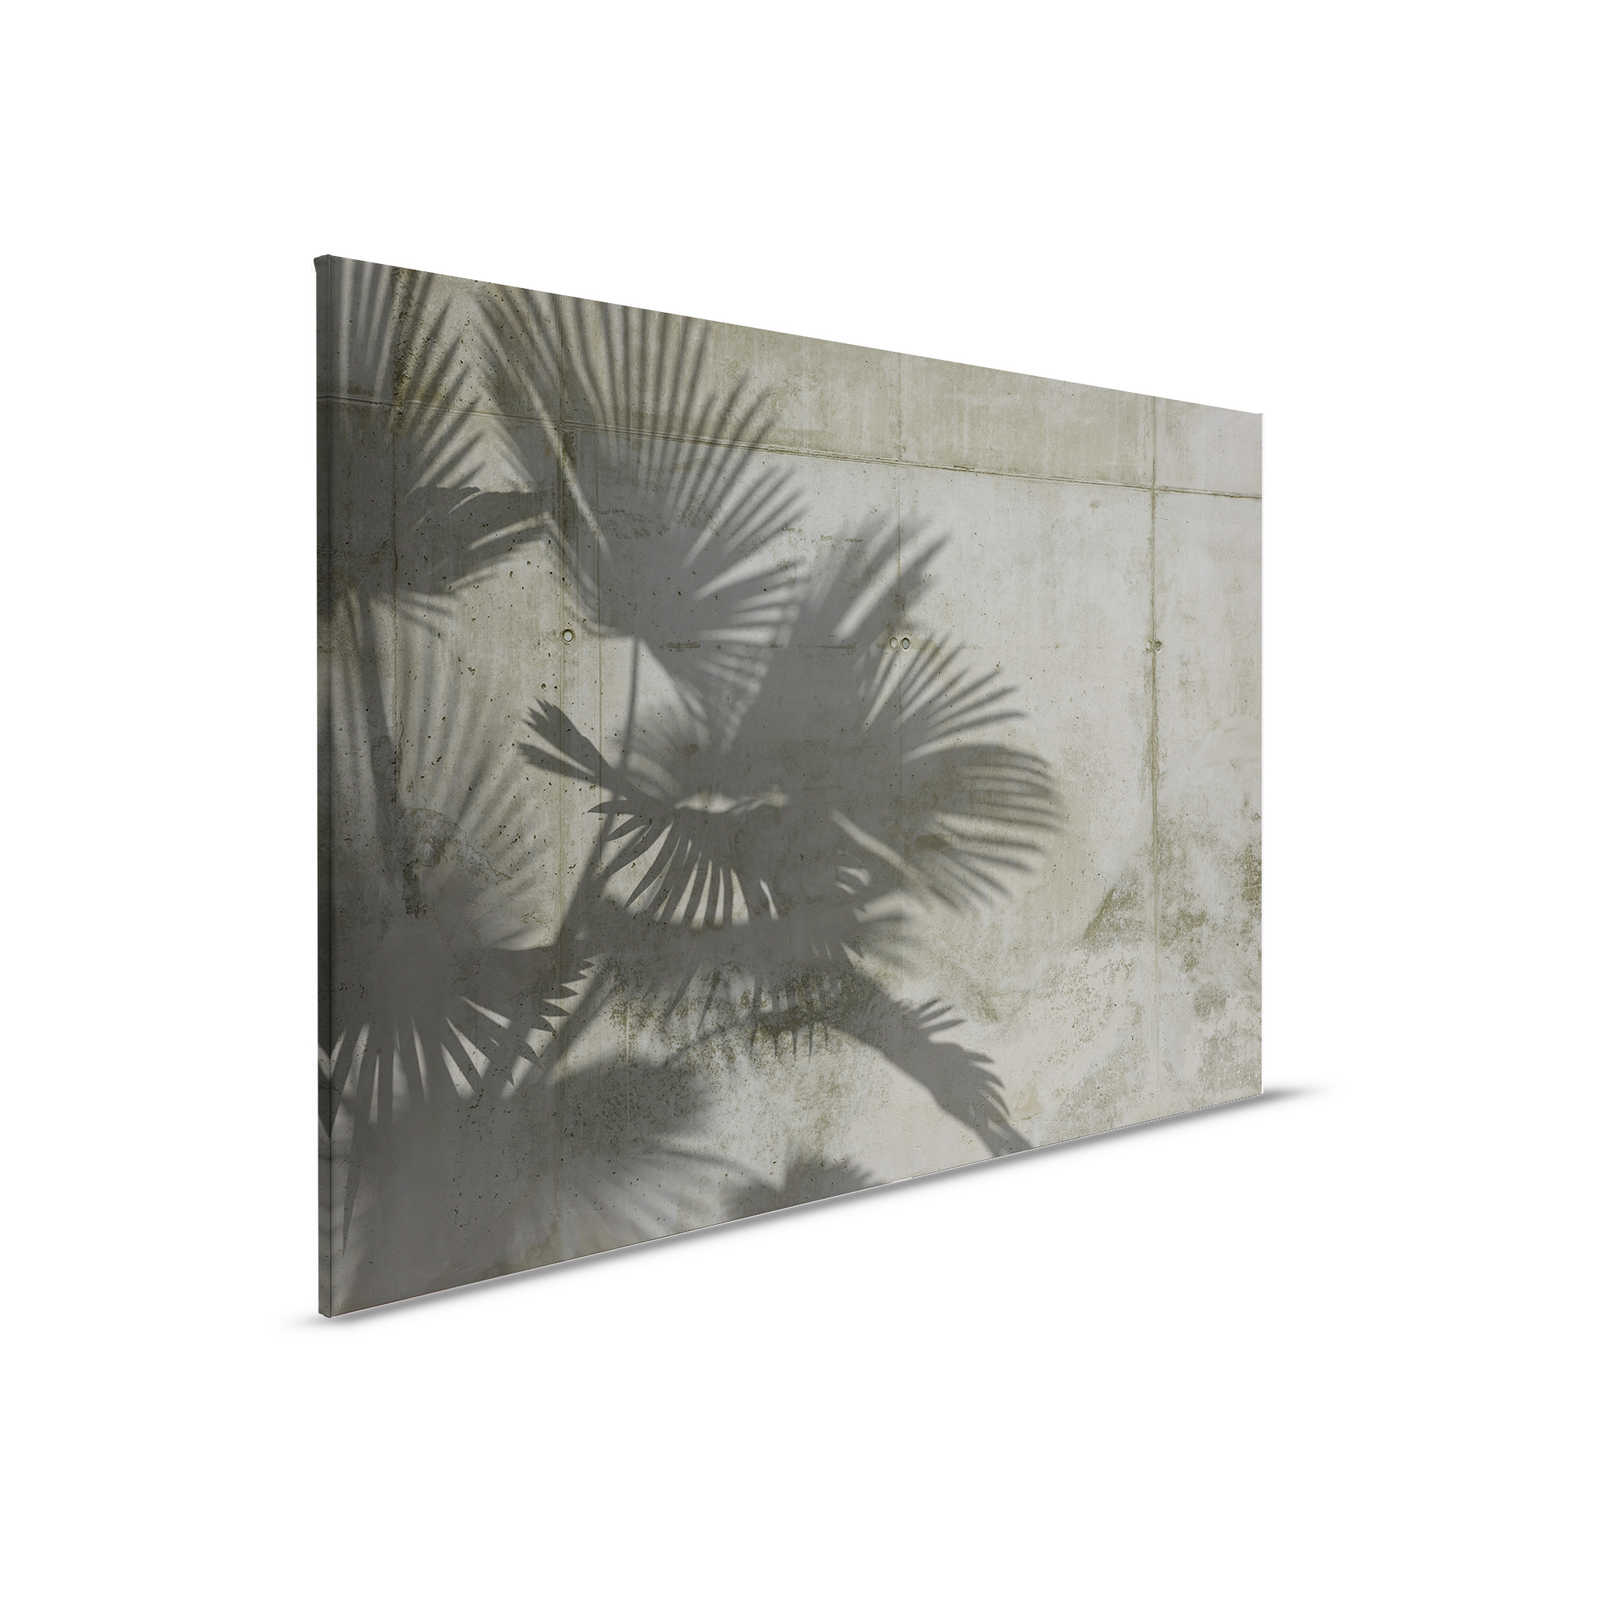         Leinwandbild Schatten von Palmenblättern auf Betonwand – 0,90 m x 0,60 m
    